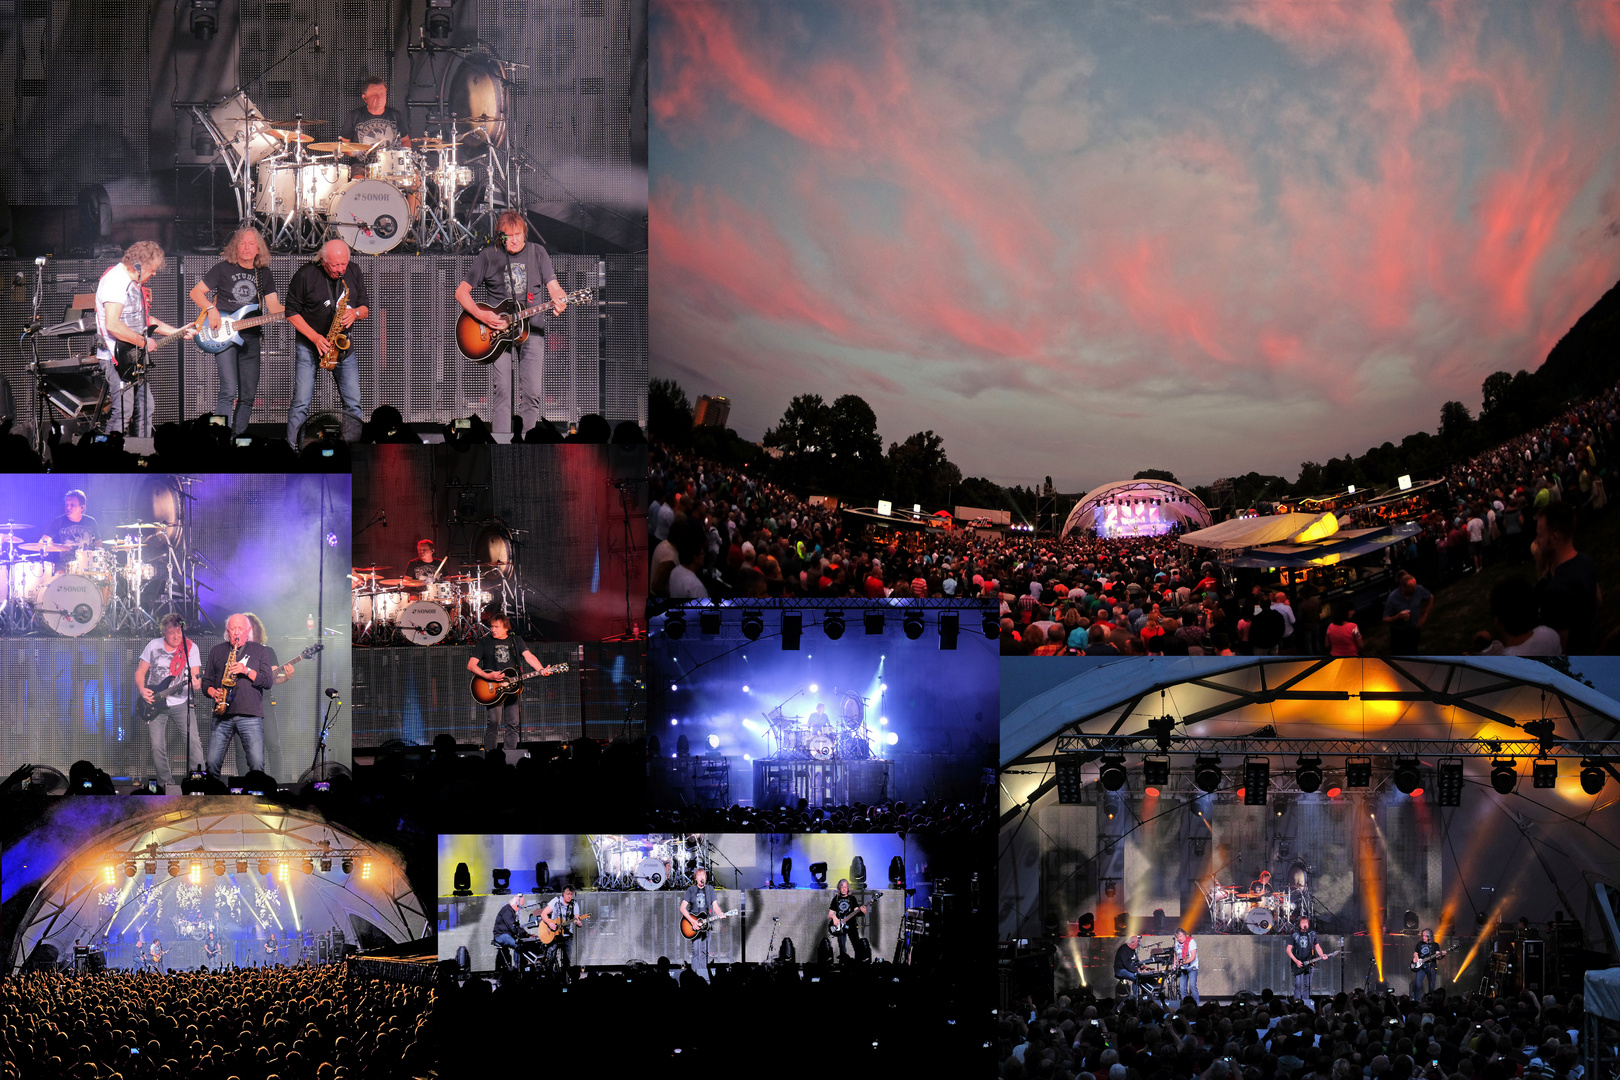 Puhdys - Abschiedstour am 01.08.2015 auf der Veolia-Bühne im Hofwiesenpark Gera